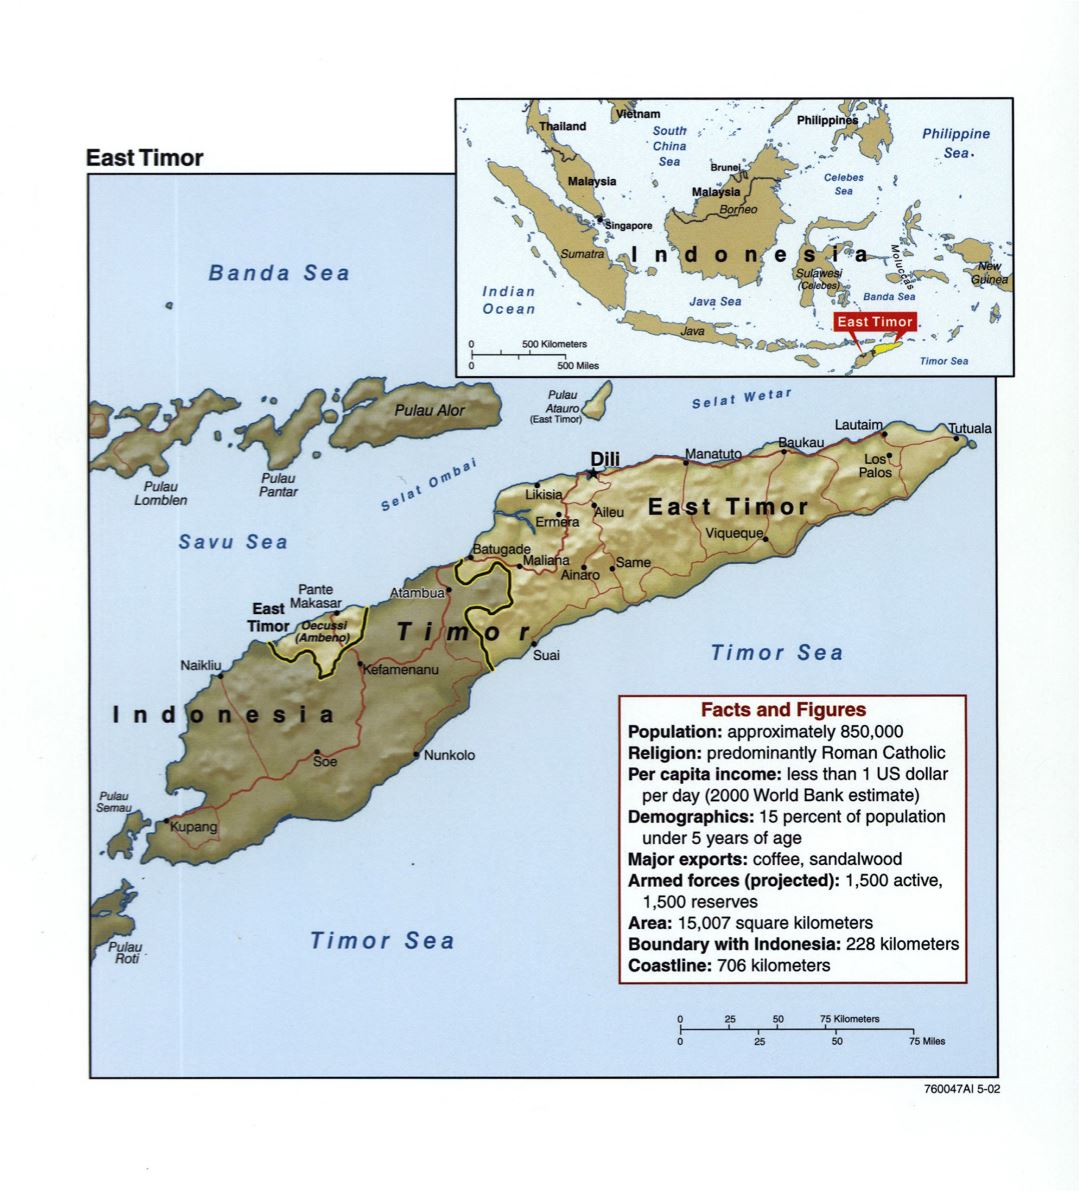 Grande detallado mapa político de Timor Oriental con socorro, carreteras y principales ciudades - 2002